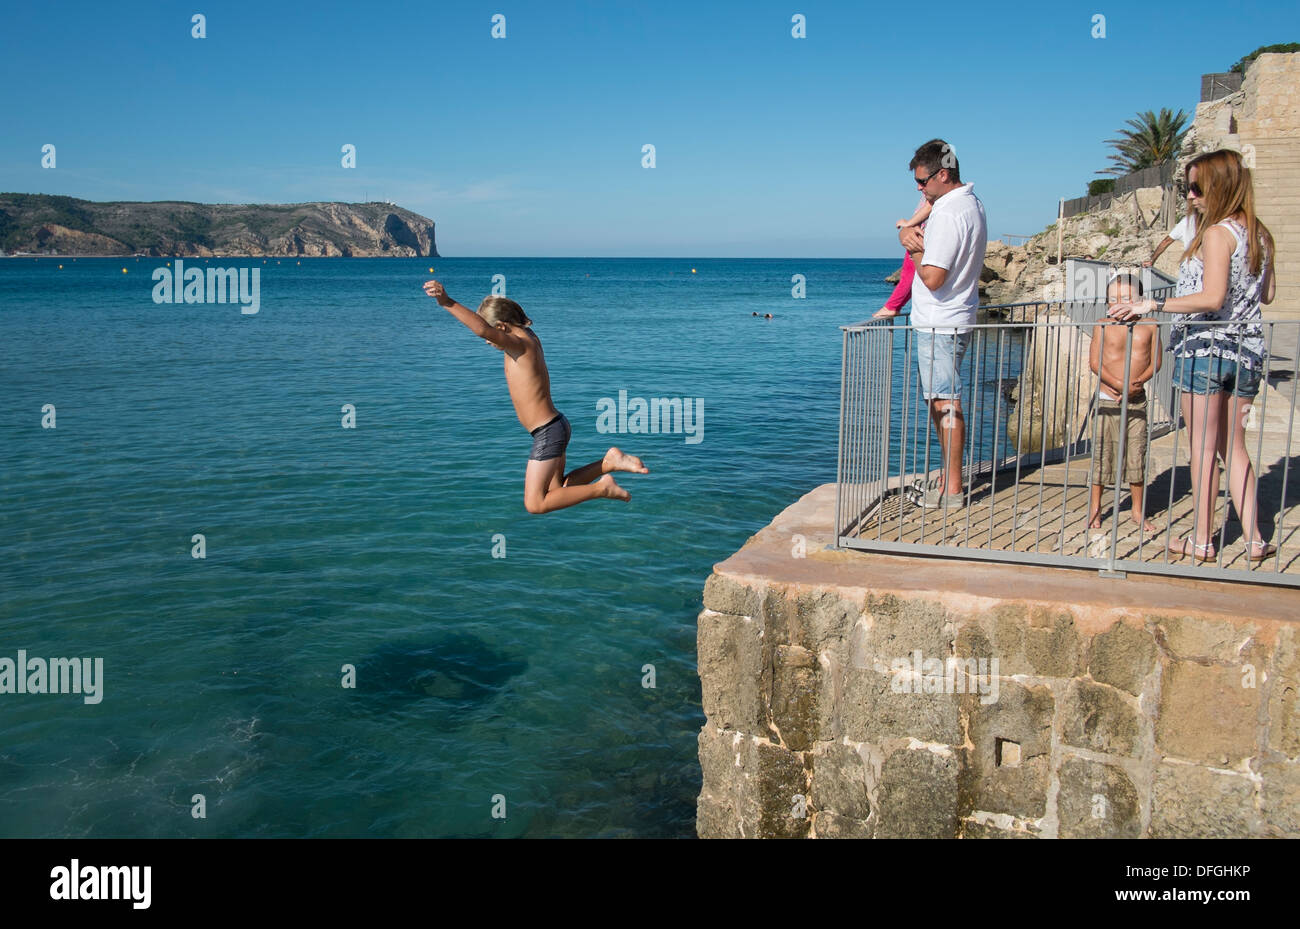 Ein kleiner Junge springt von einer hohen Mauer im Meer in Javea, Spanien. Stockfoto